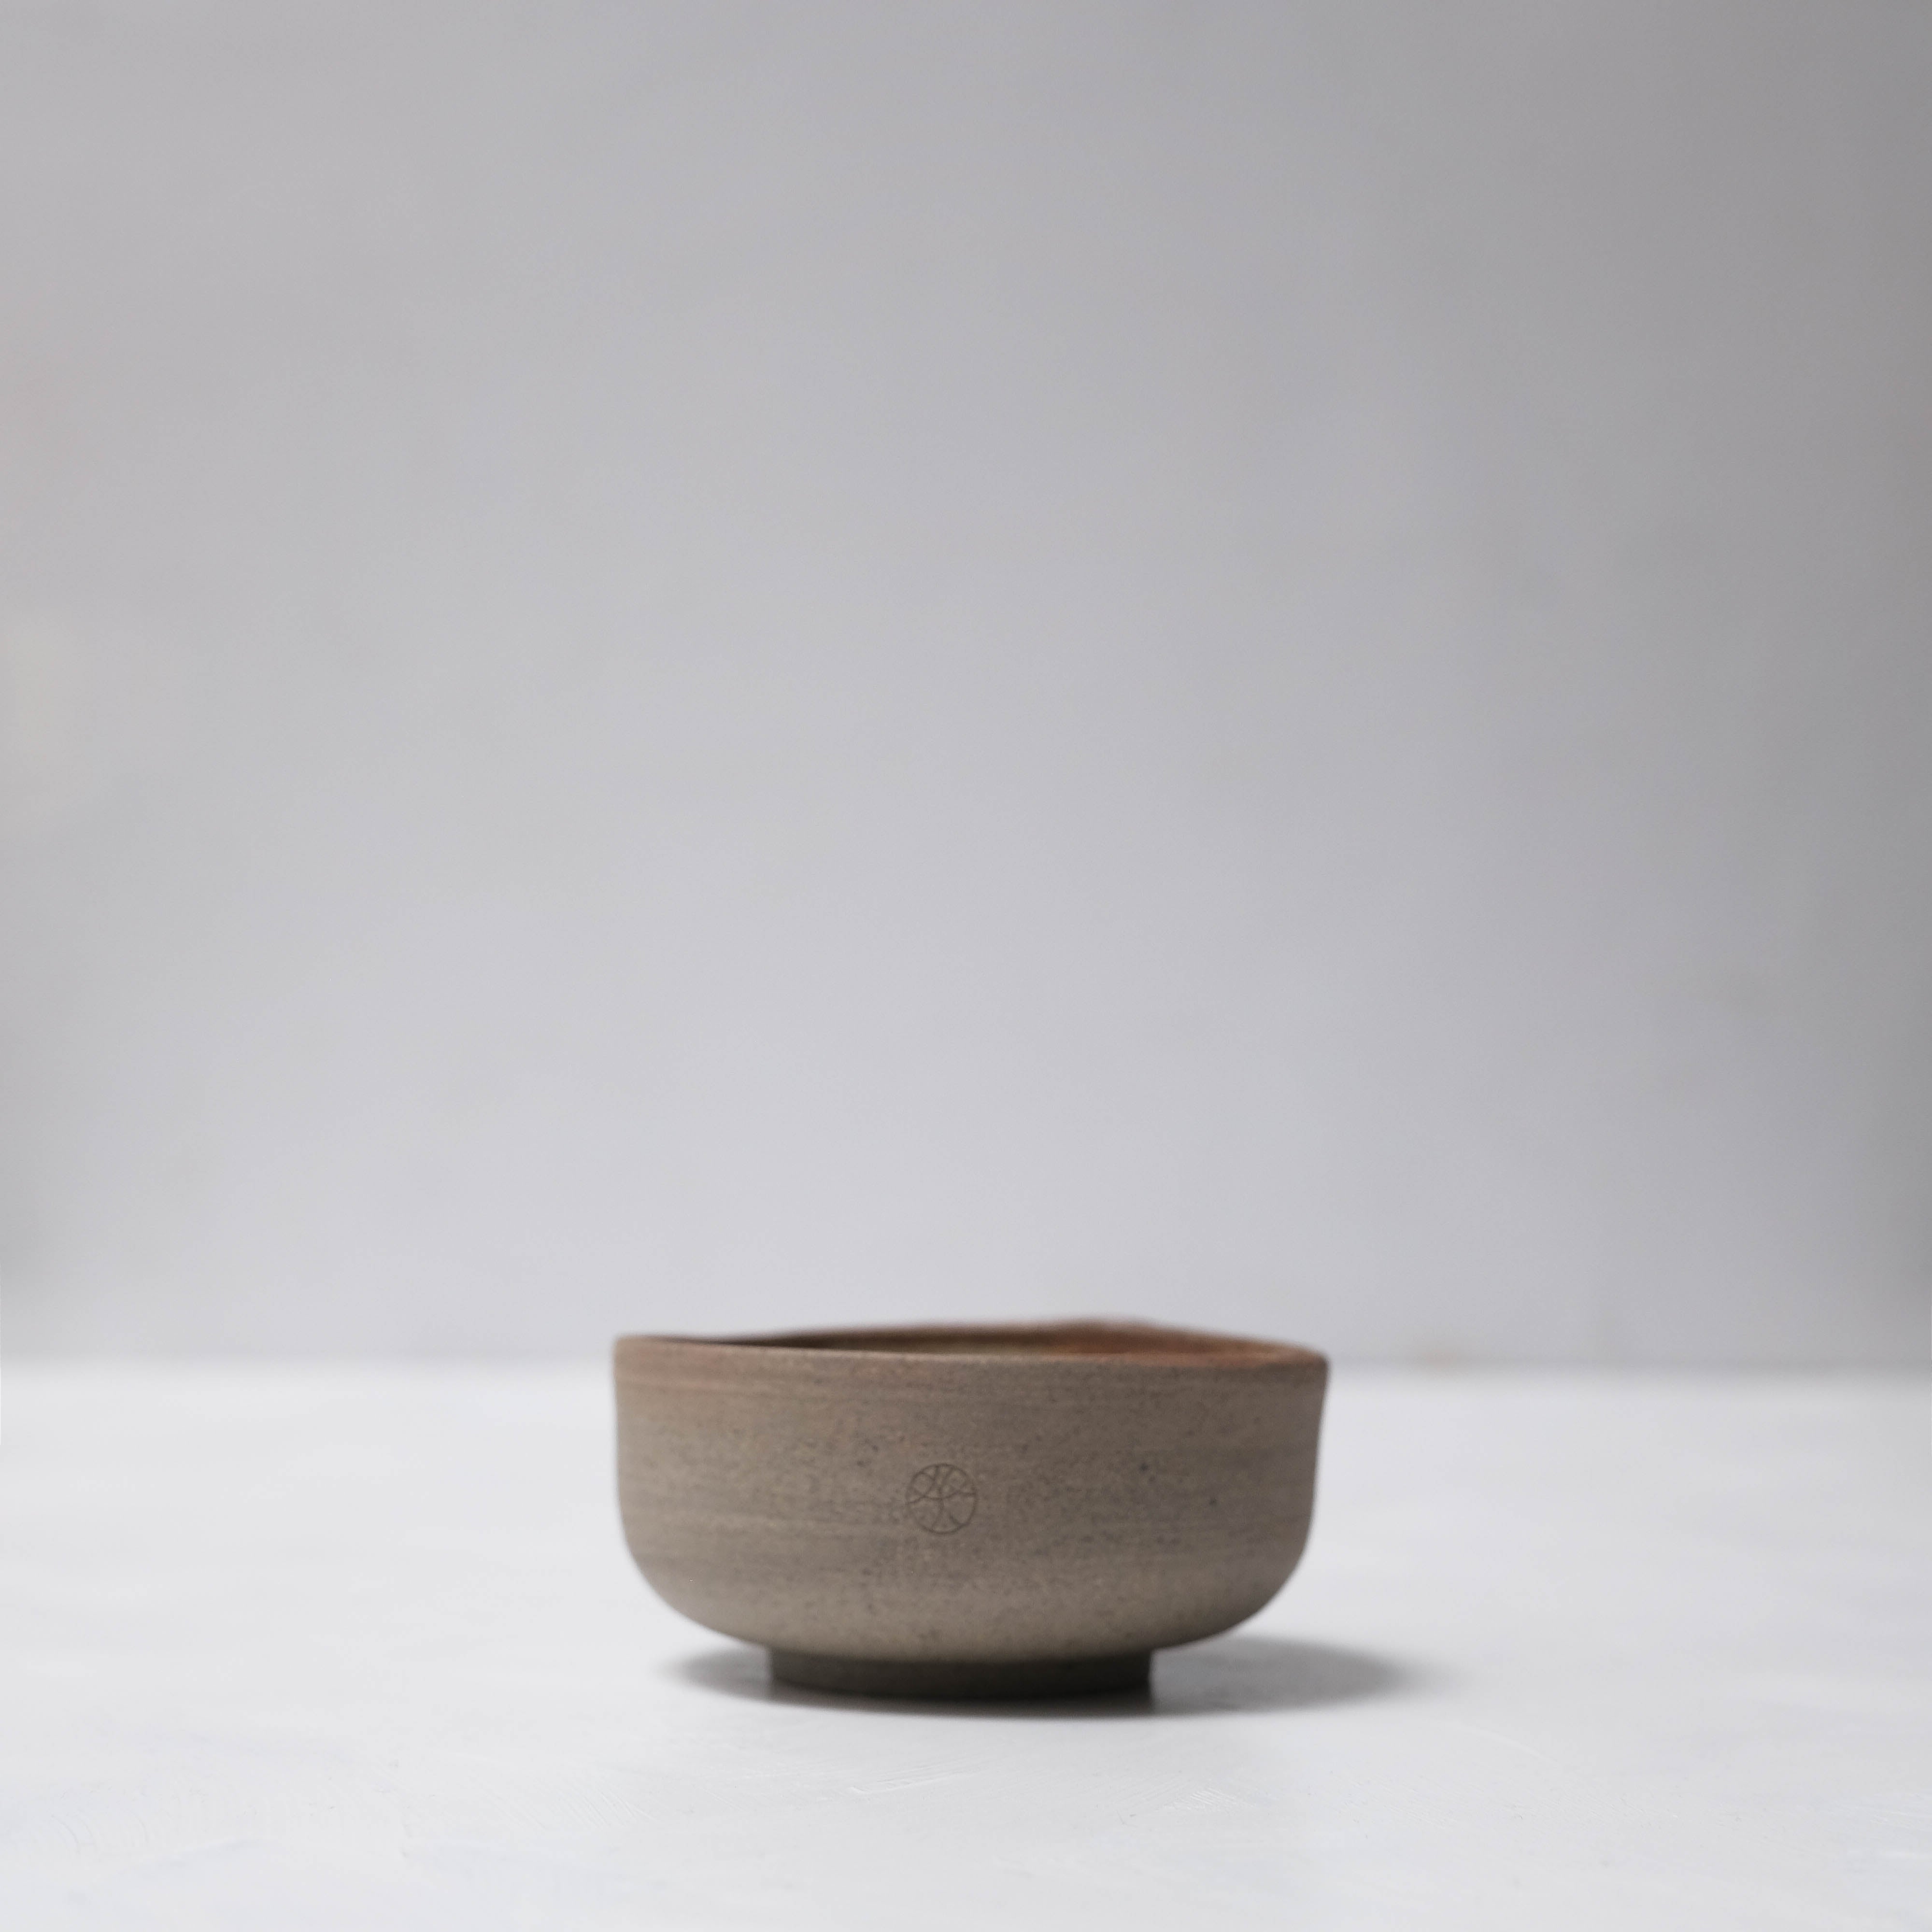 Haigusuri (灰釉) Mini Bowl #ASH07